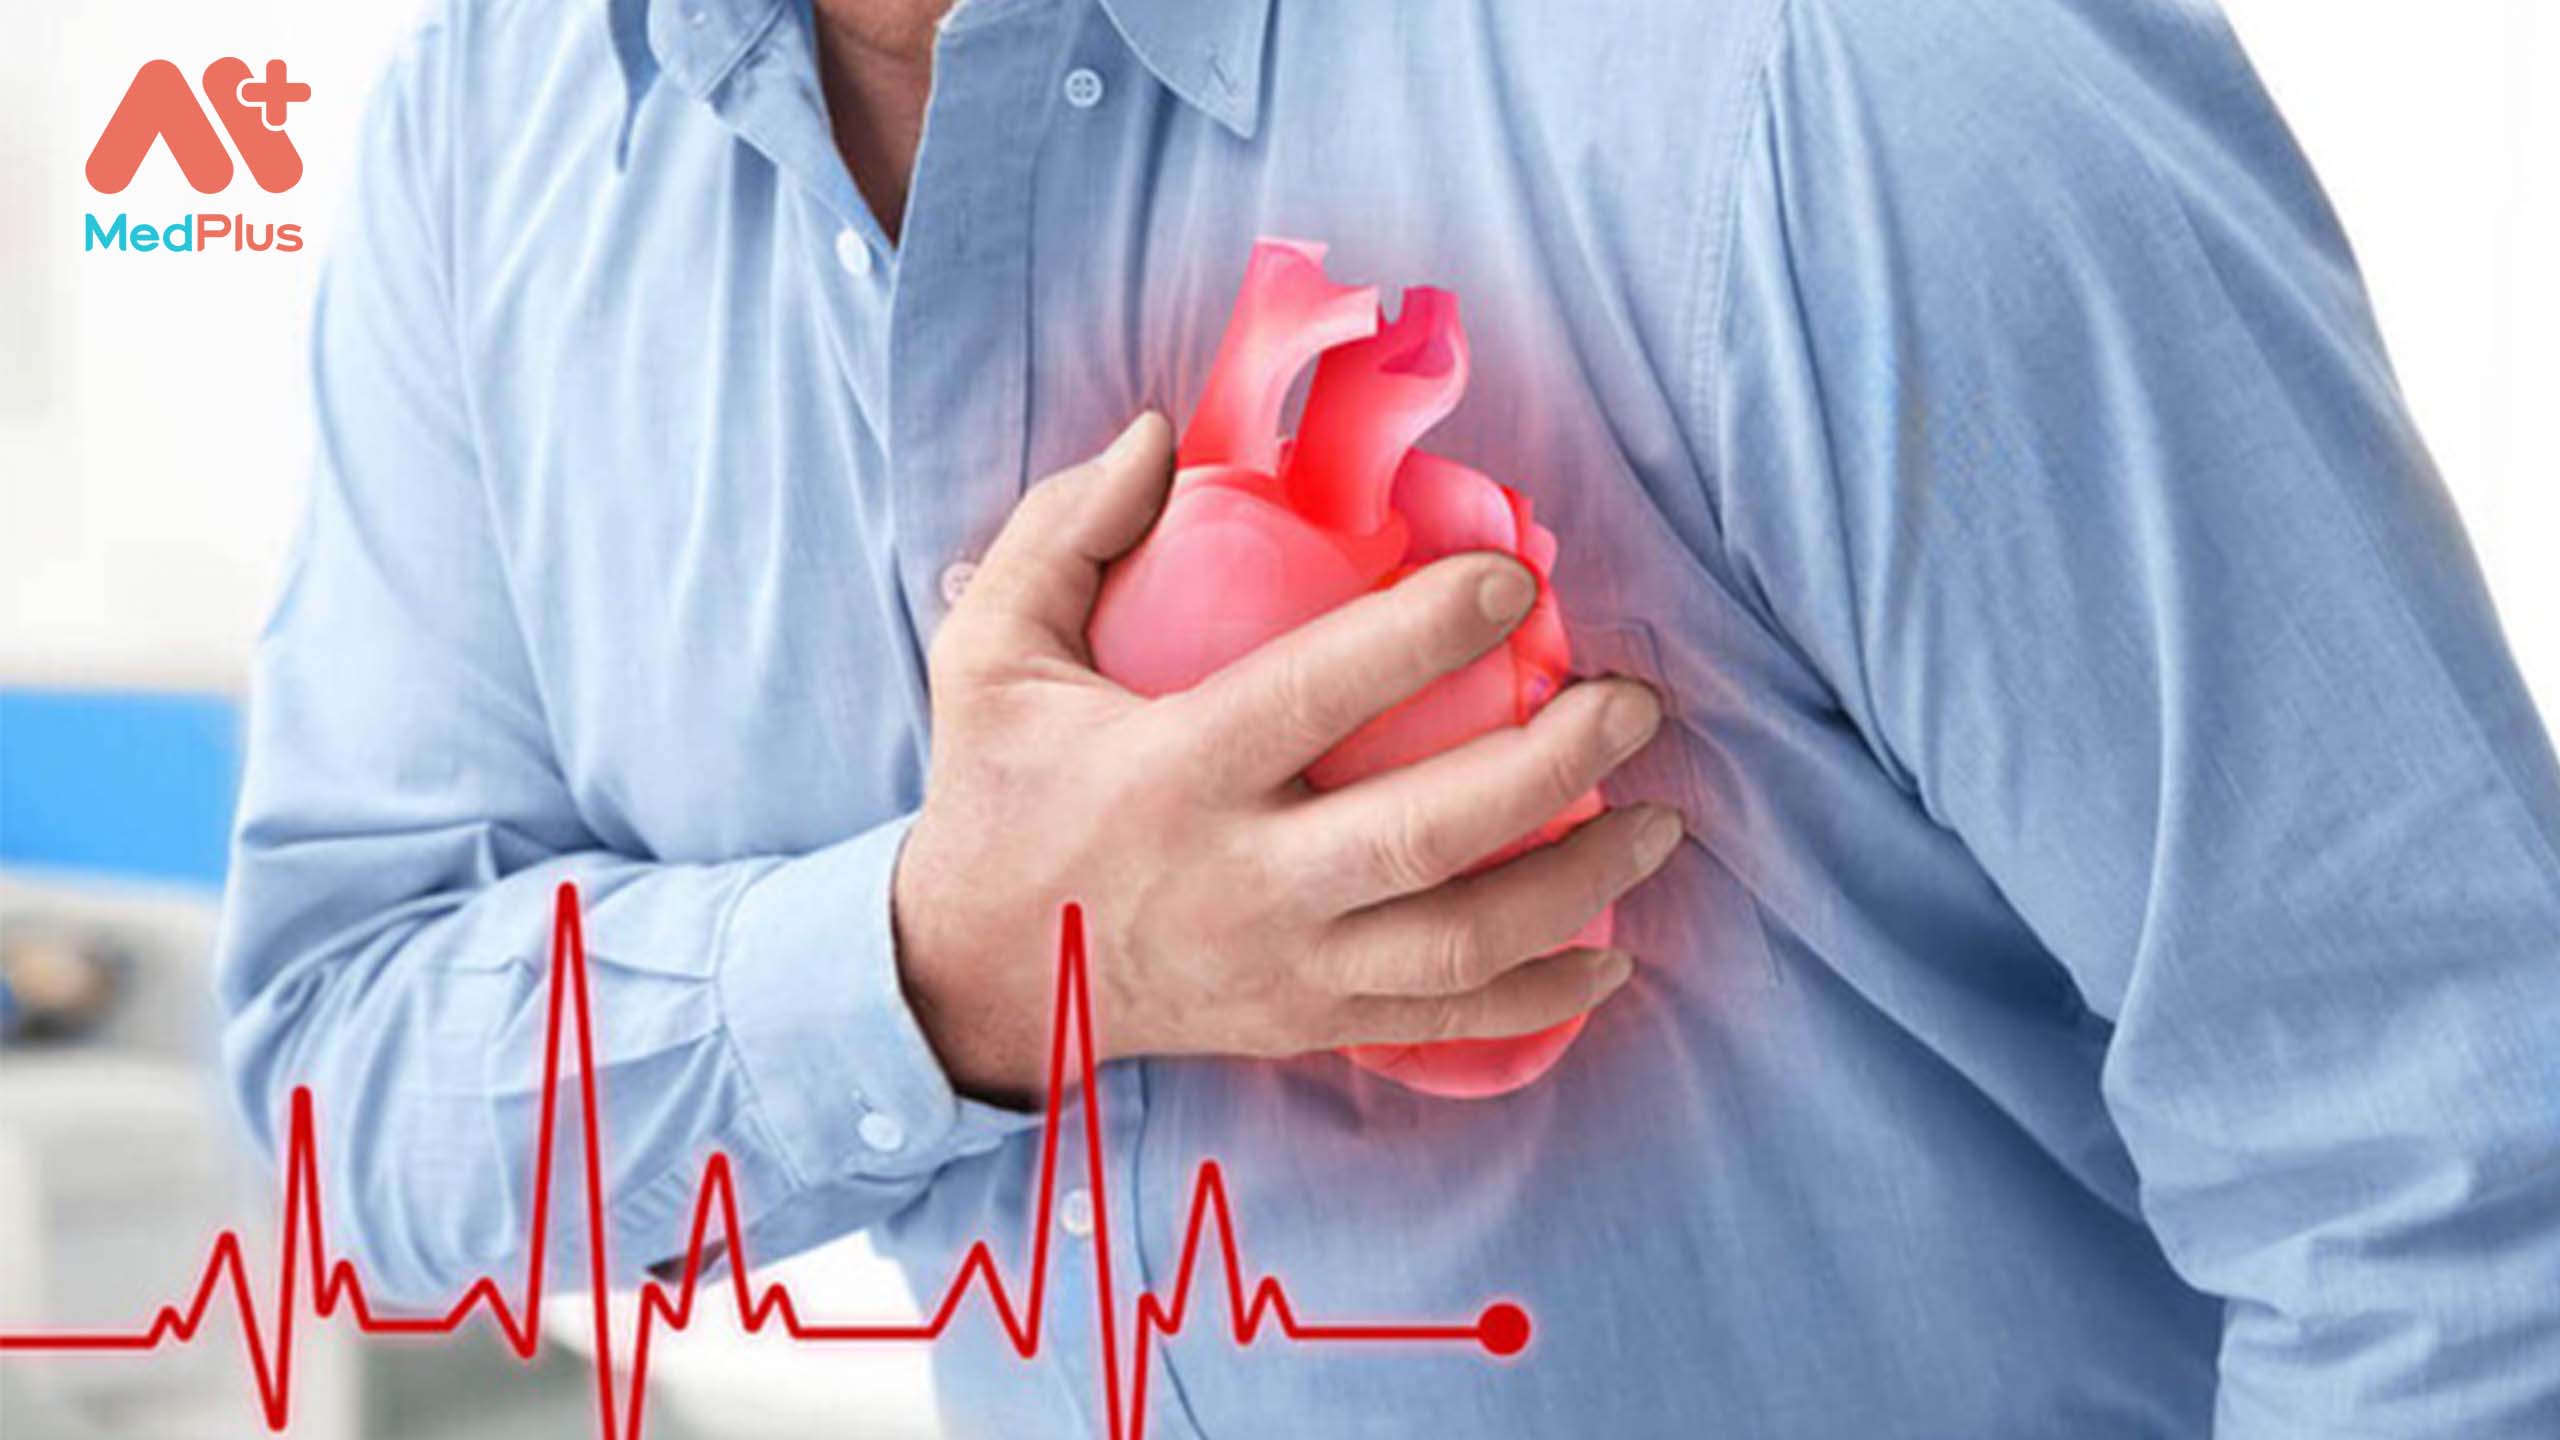 Nguyên nhân chính gây ra đột quỵ được cho là do xơ vữa động mạch